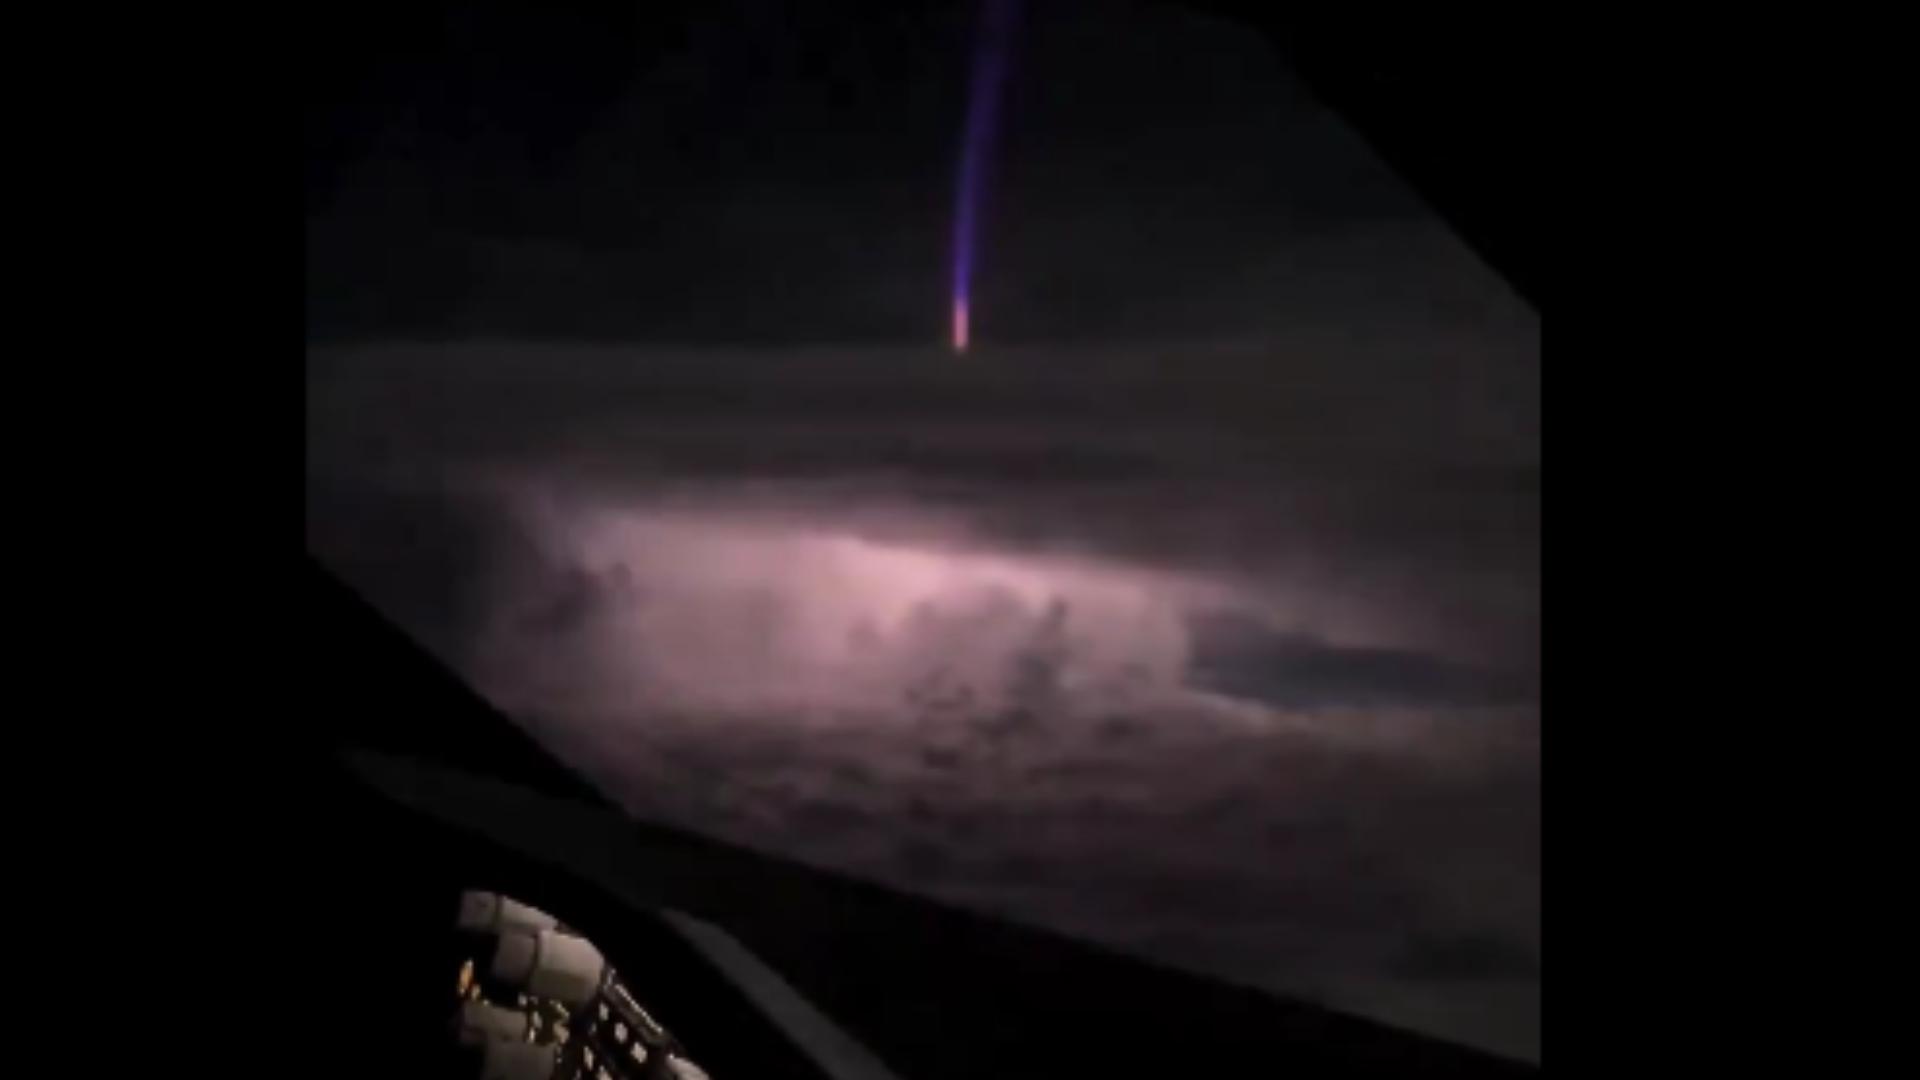 Captan en Video un ‘Gigantic Jet’, Descarga Eléctrica Atmosférica Extremadamente Rara